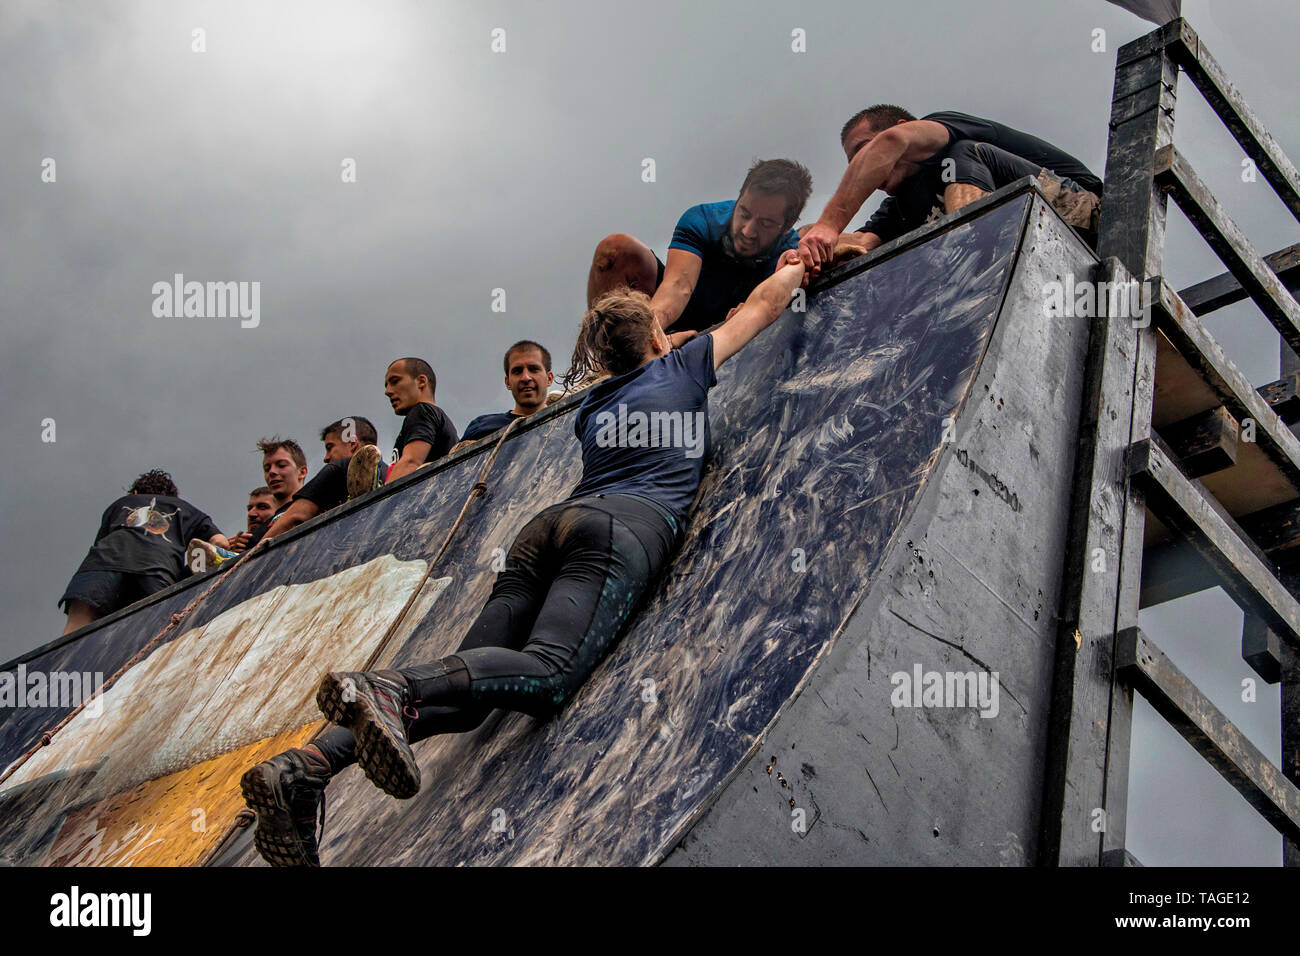 SOFIA, Bulgaria - 07 Julio 2018 - Los participantes están ayudando a la mujer a superar un obstáculo en una carrera de resistencia de pared Foto de stock